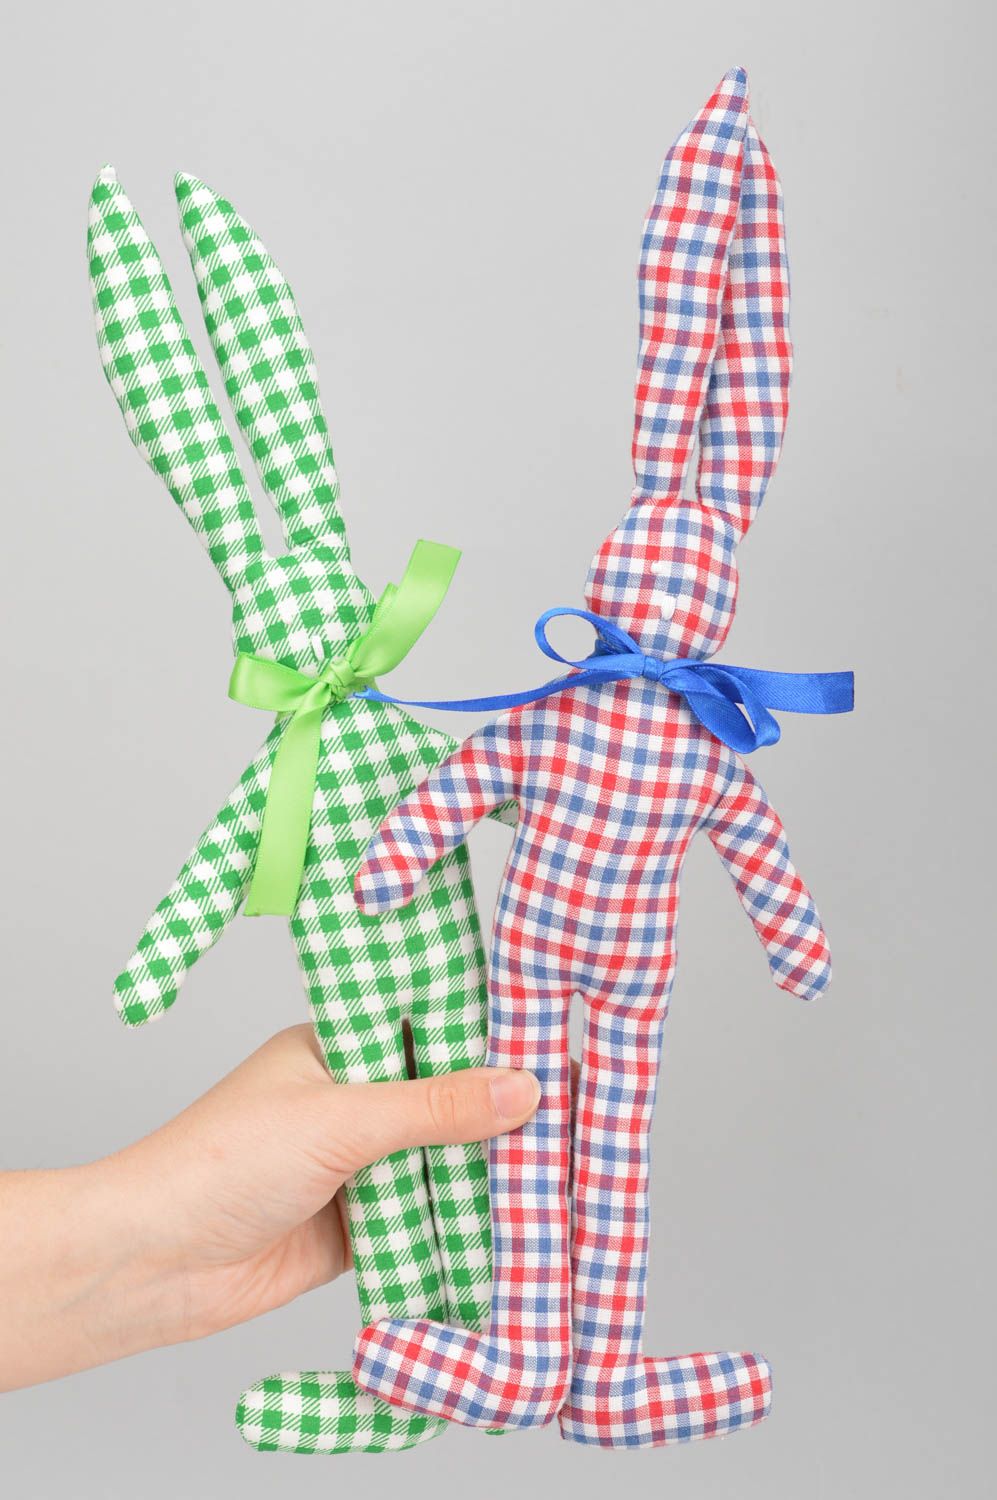 Интерьерные куклы зайцы ручной работы из хлопка комплект 2 шт для детей и декора фото 3